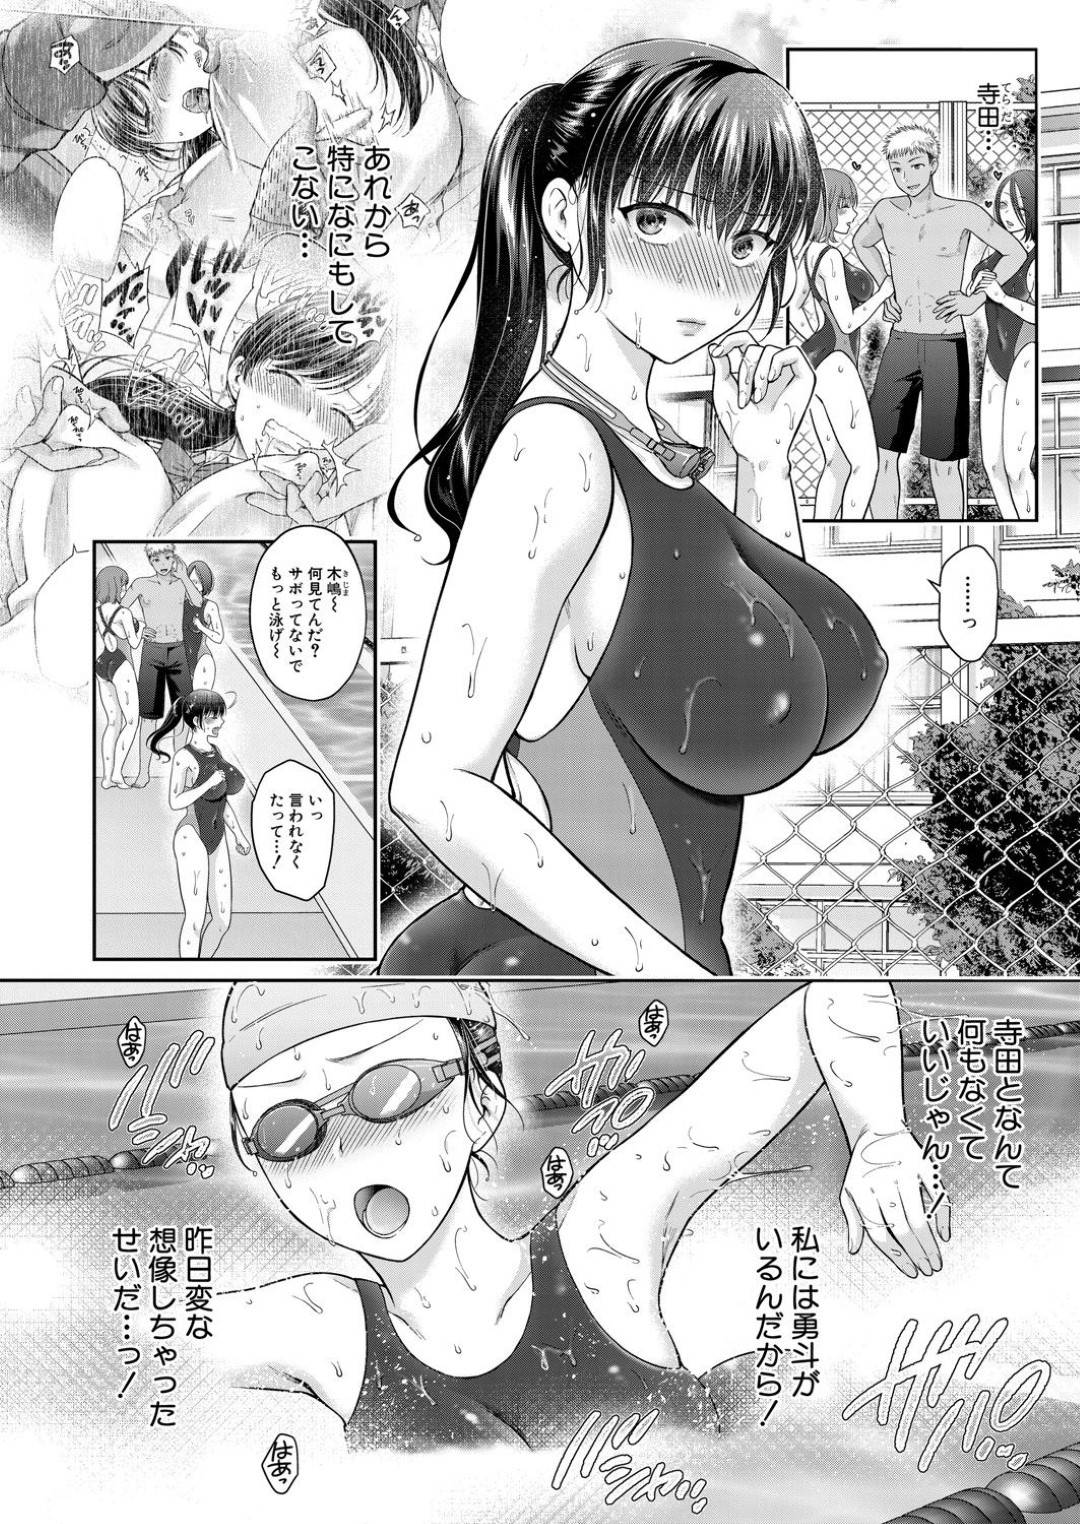 【エロ漫画】水泳部の巨乳美少女JKは彼氏以外の男に遊ばれ、欲求不満でムラムラしてしまう…【ハルサワ】